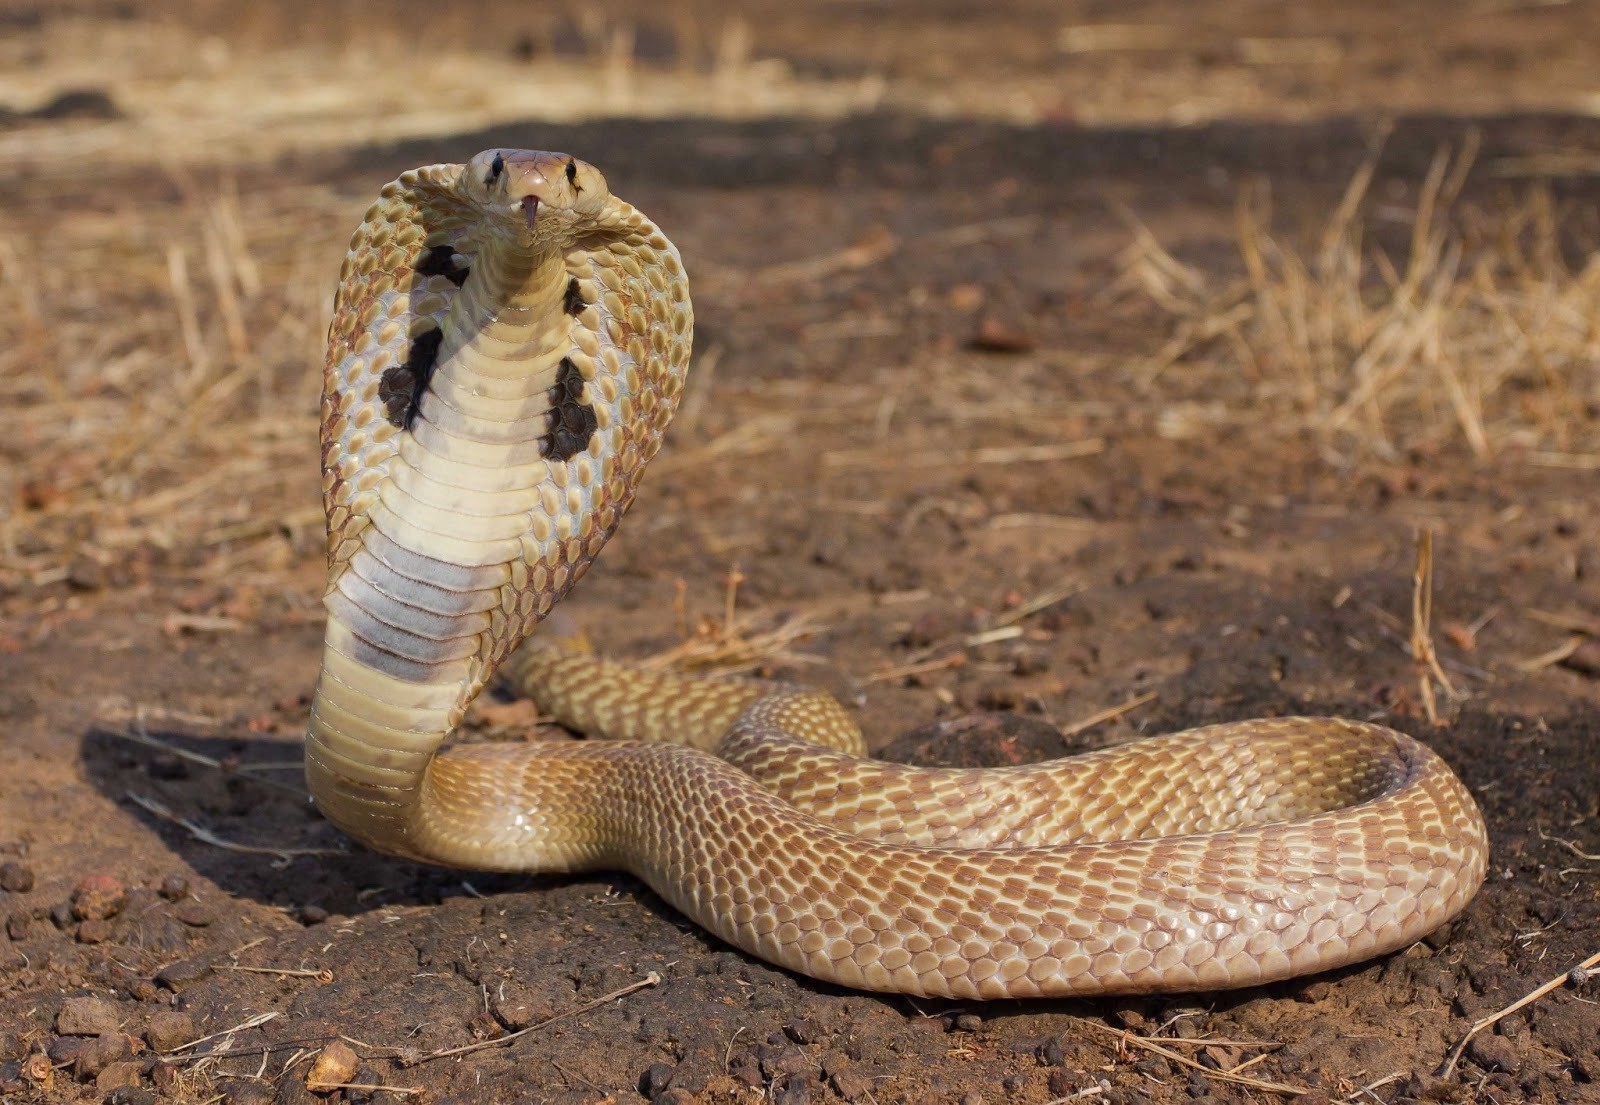 Missing king cobra found behind woman's dryer in Ocoee